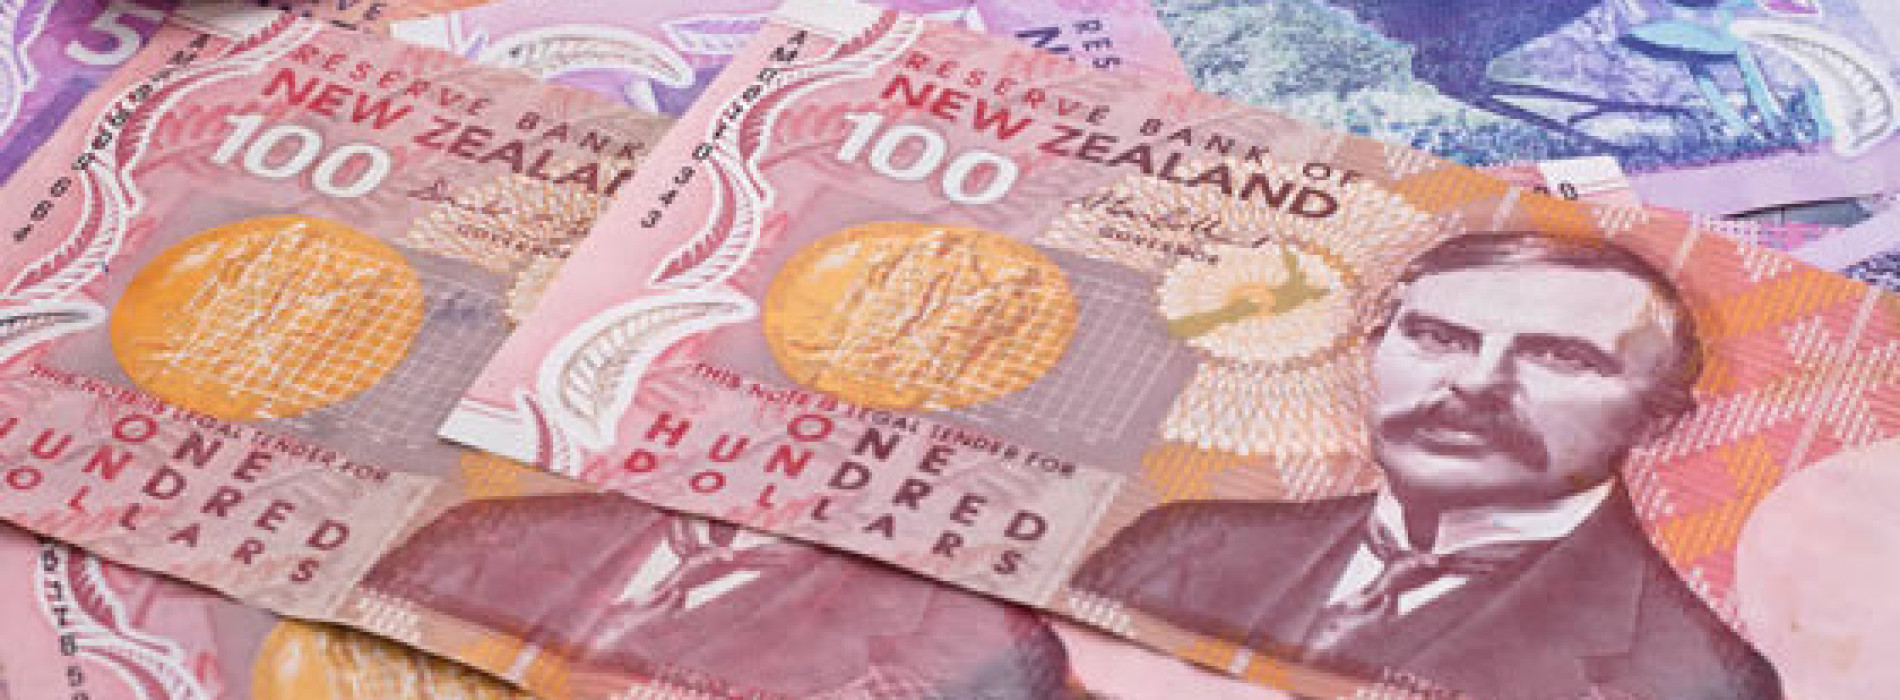 Poranny komentarz walutowy – rośnie zainteresowanie NZD